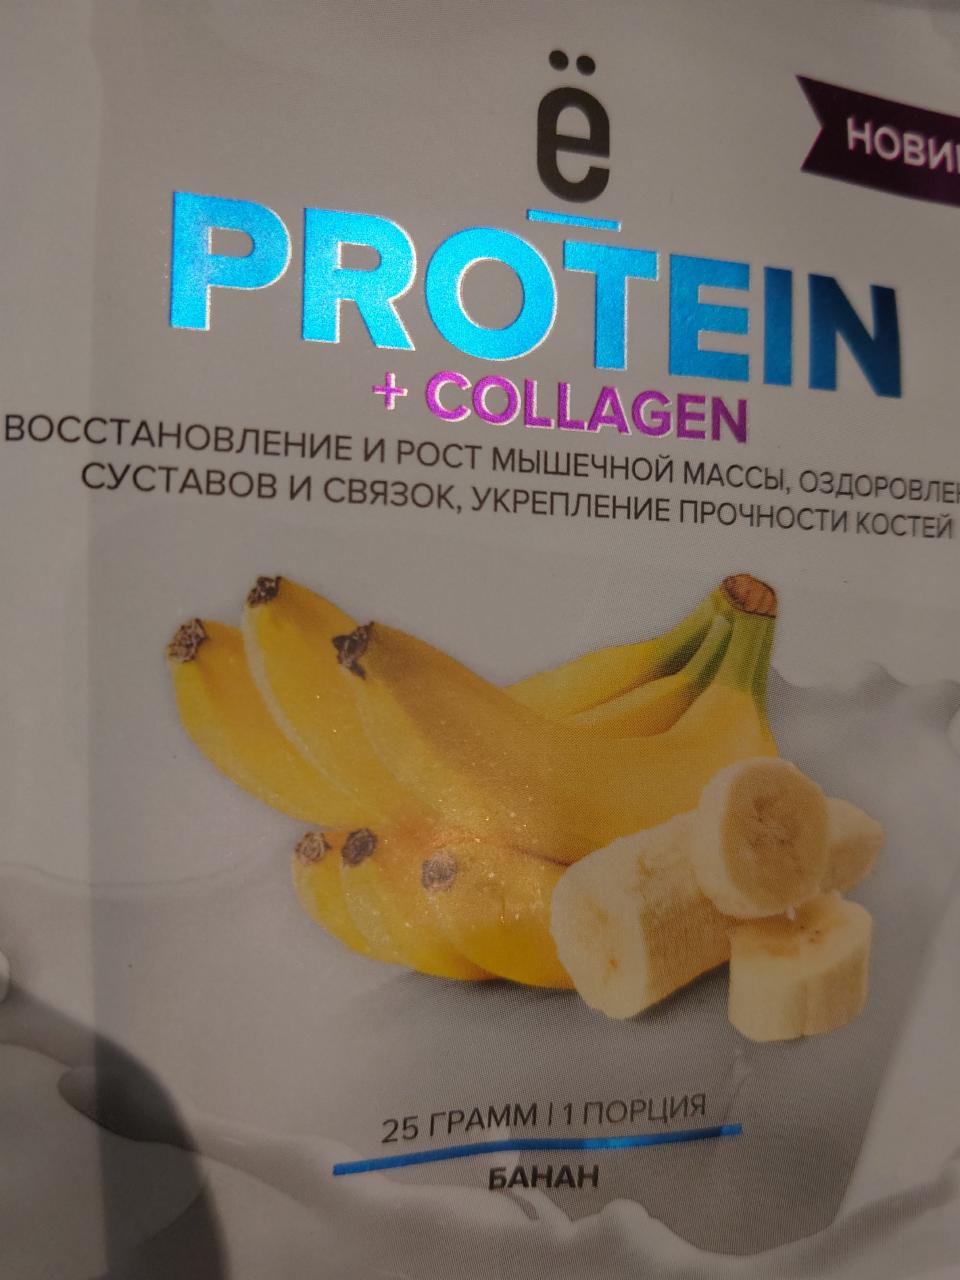 Фото - протеиновый коктейль с коллагеном банан Ёбатон